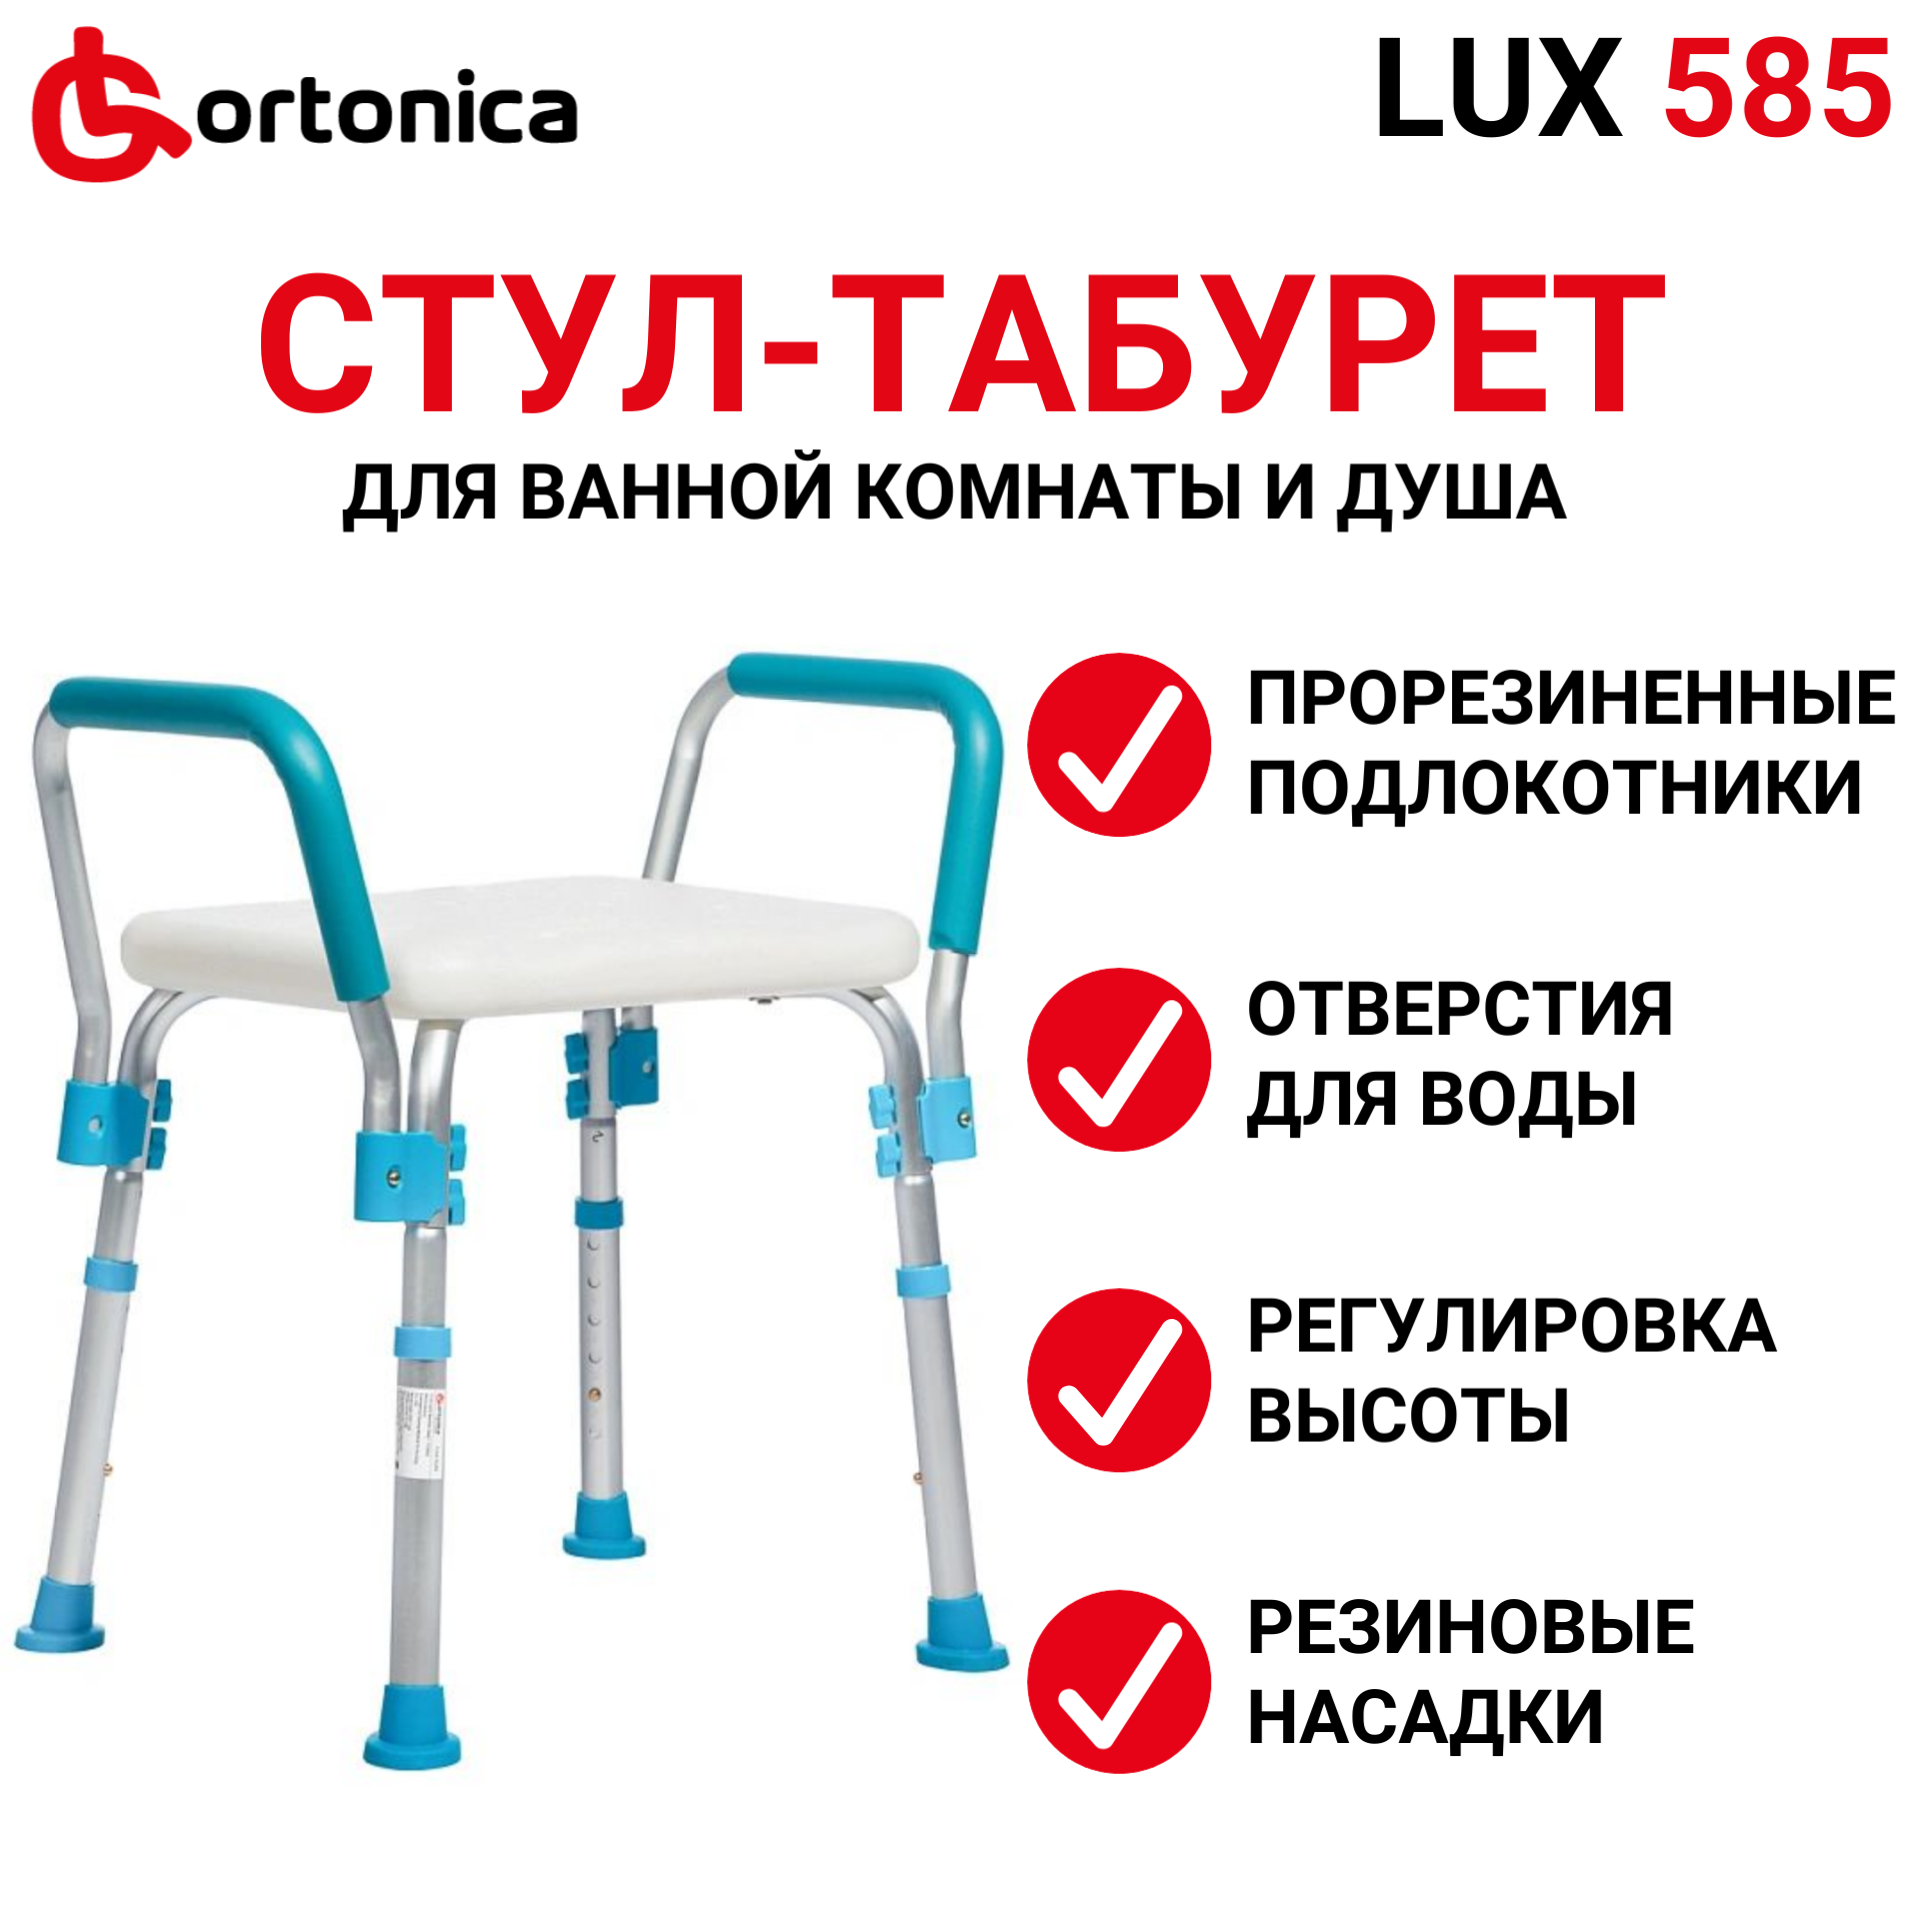 Сиденье Ortonica LUX 585 для купания в душе и ванной для пожилых и беременных, пластиковый с поручнями, регулируемый по высоте, со съемными подлокотниками и мягкими опорами